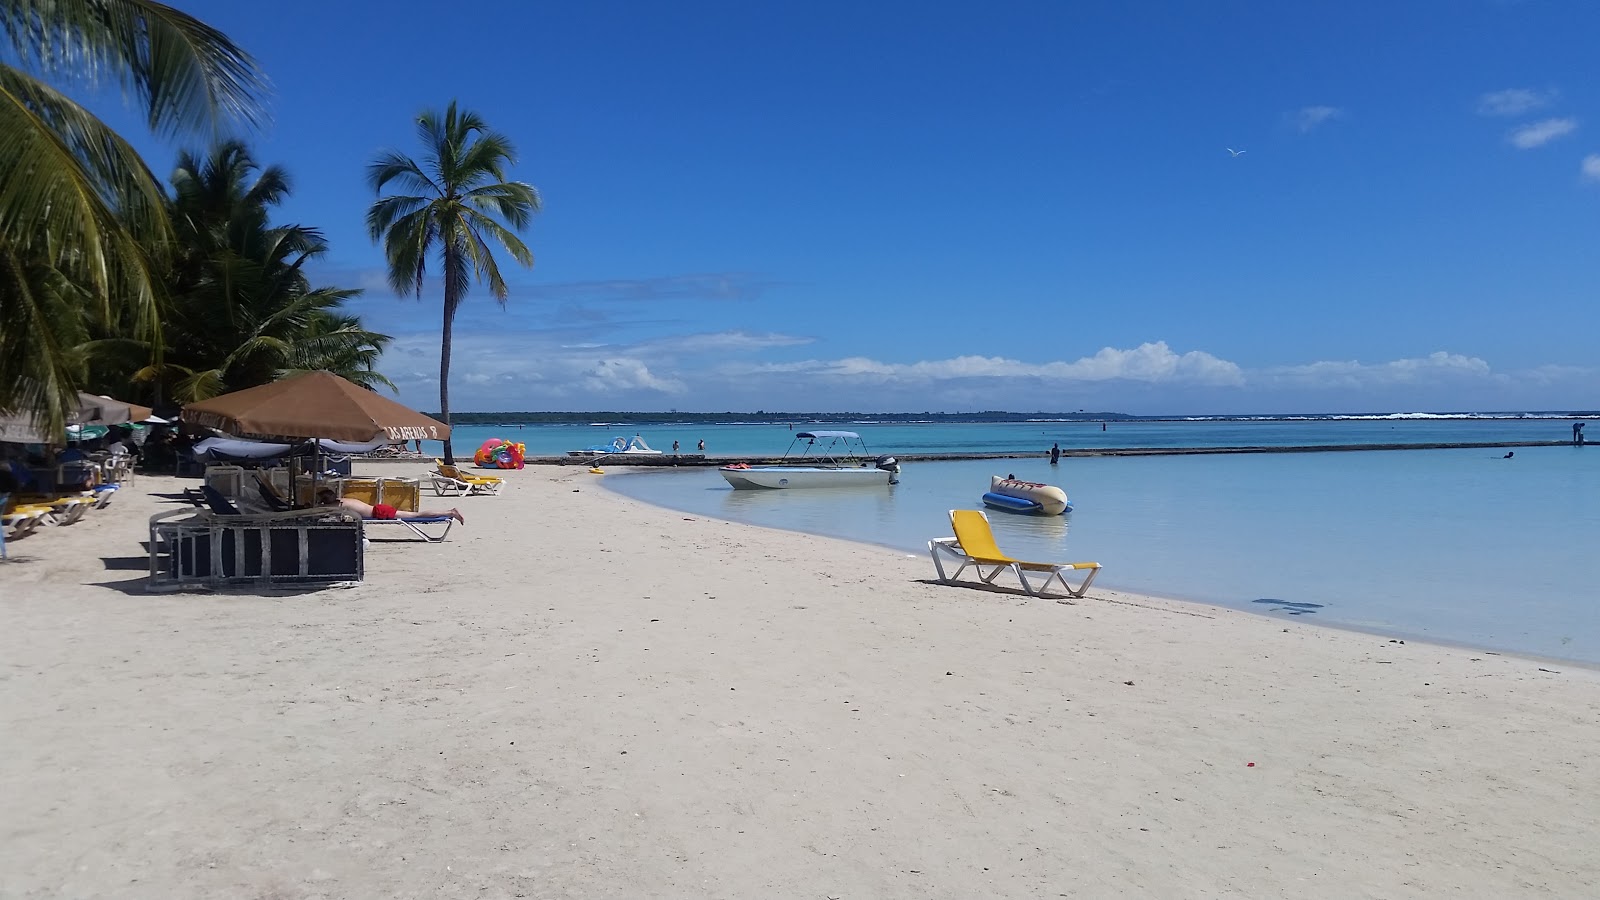 Foto af Boca Chica beach - populært sted blandt afslapningskendere